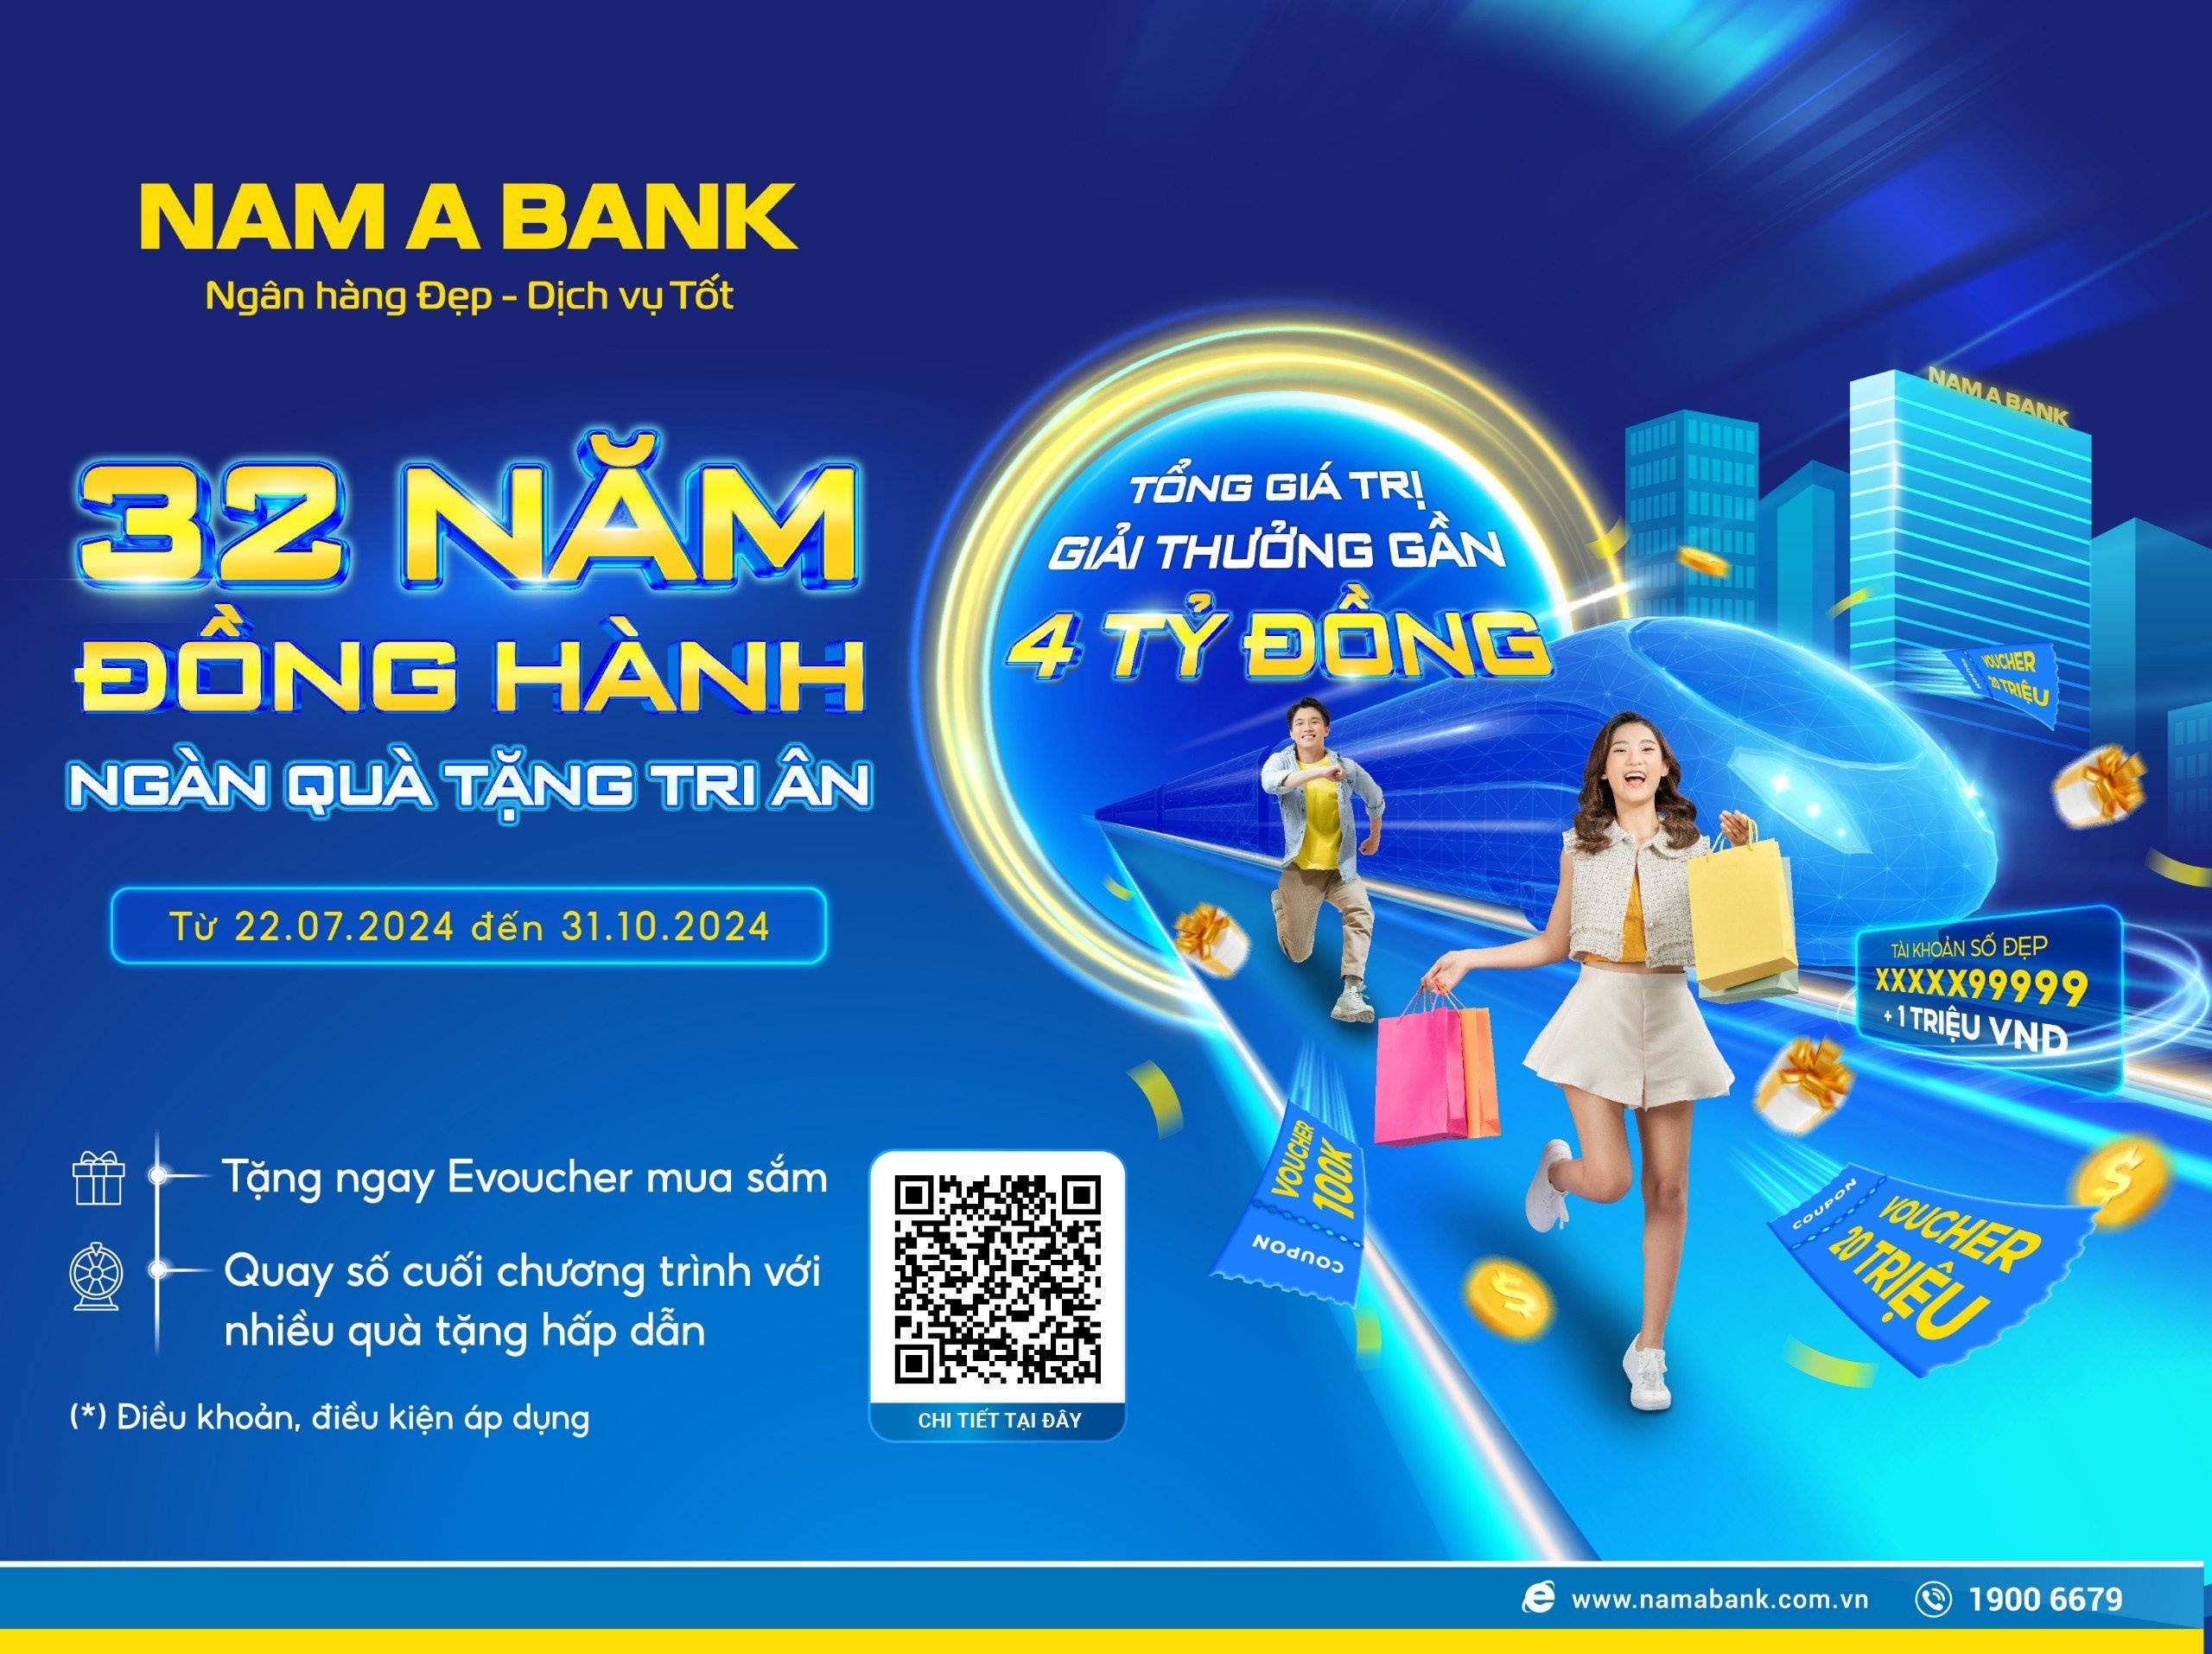 Kỷ niệm 32 năm thành lập, Nam A Bank tung ưu đãi trị giá lên đến 4 tỷ đồng.